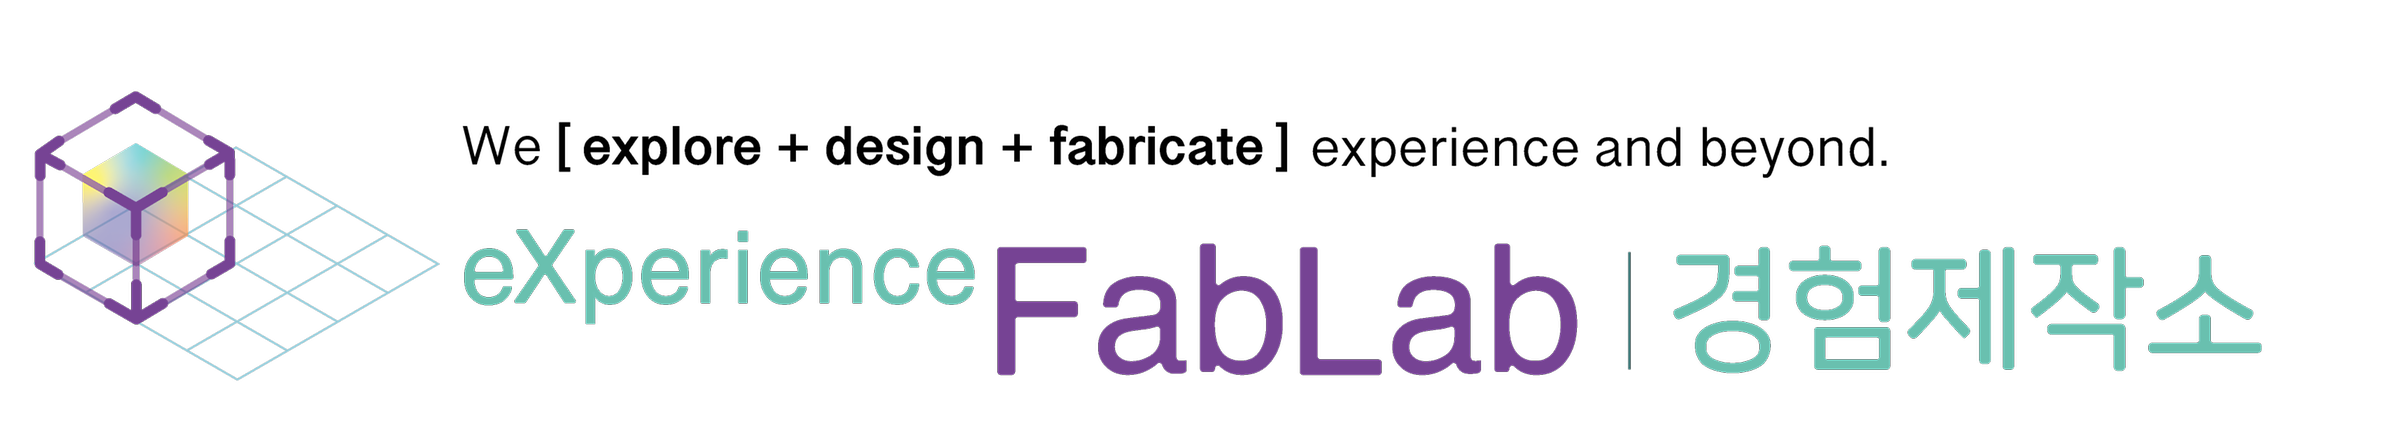 exfablab logo